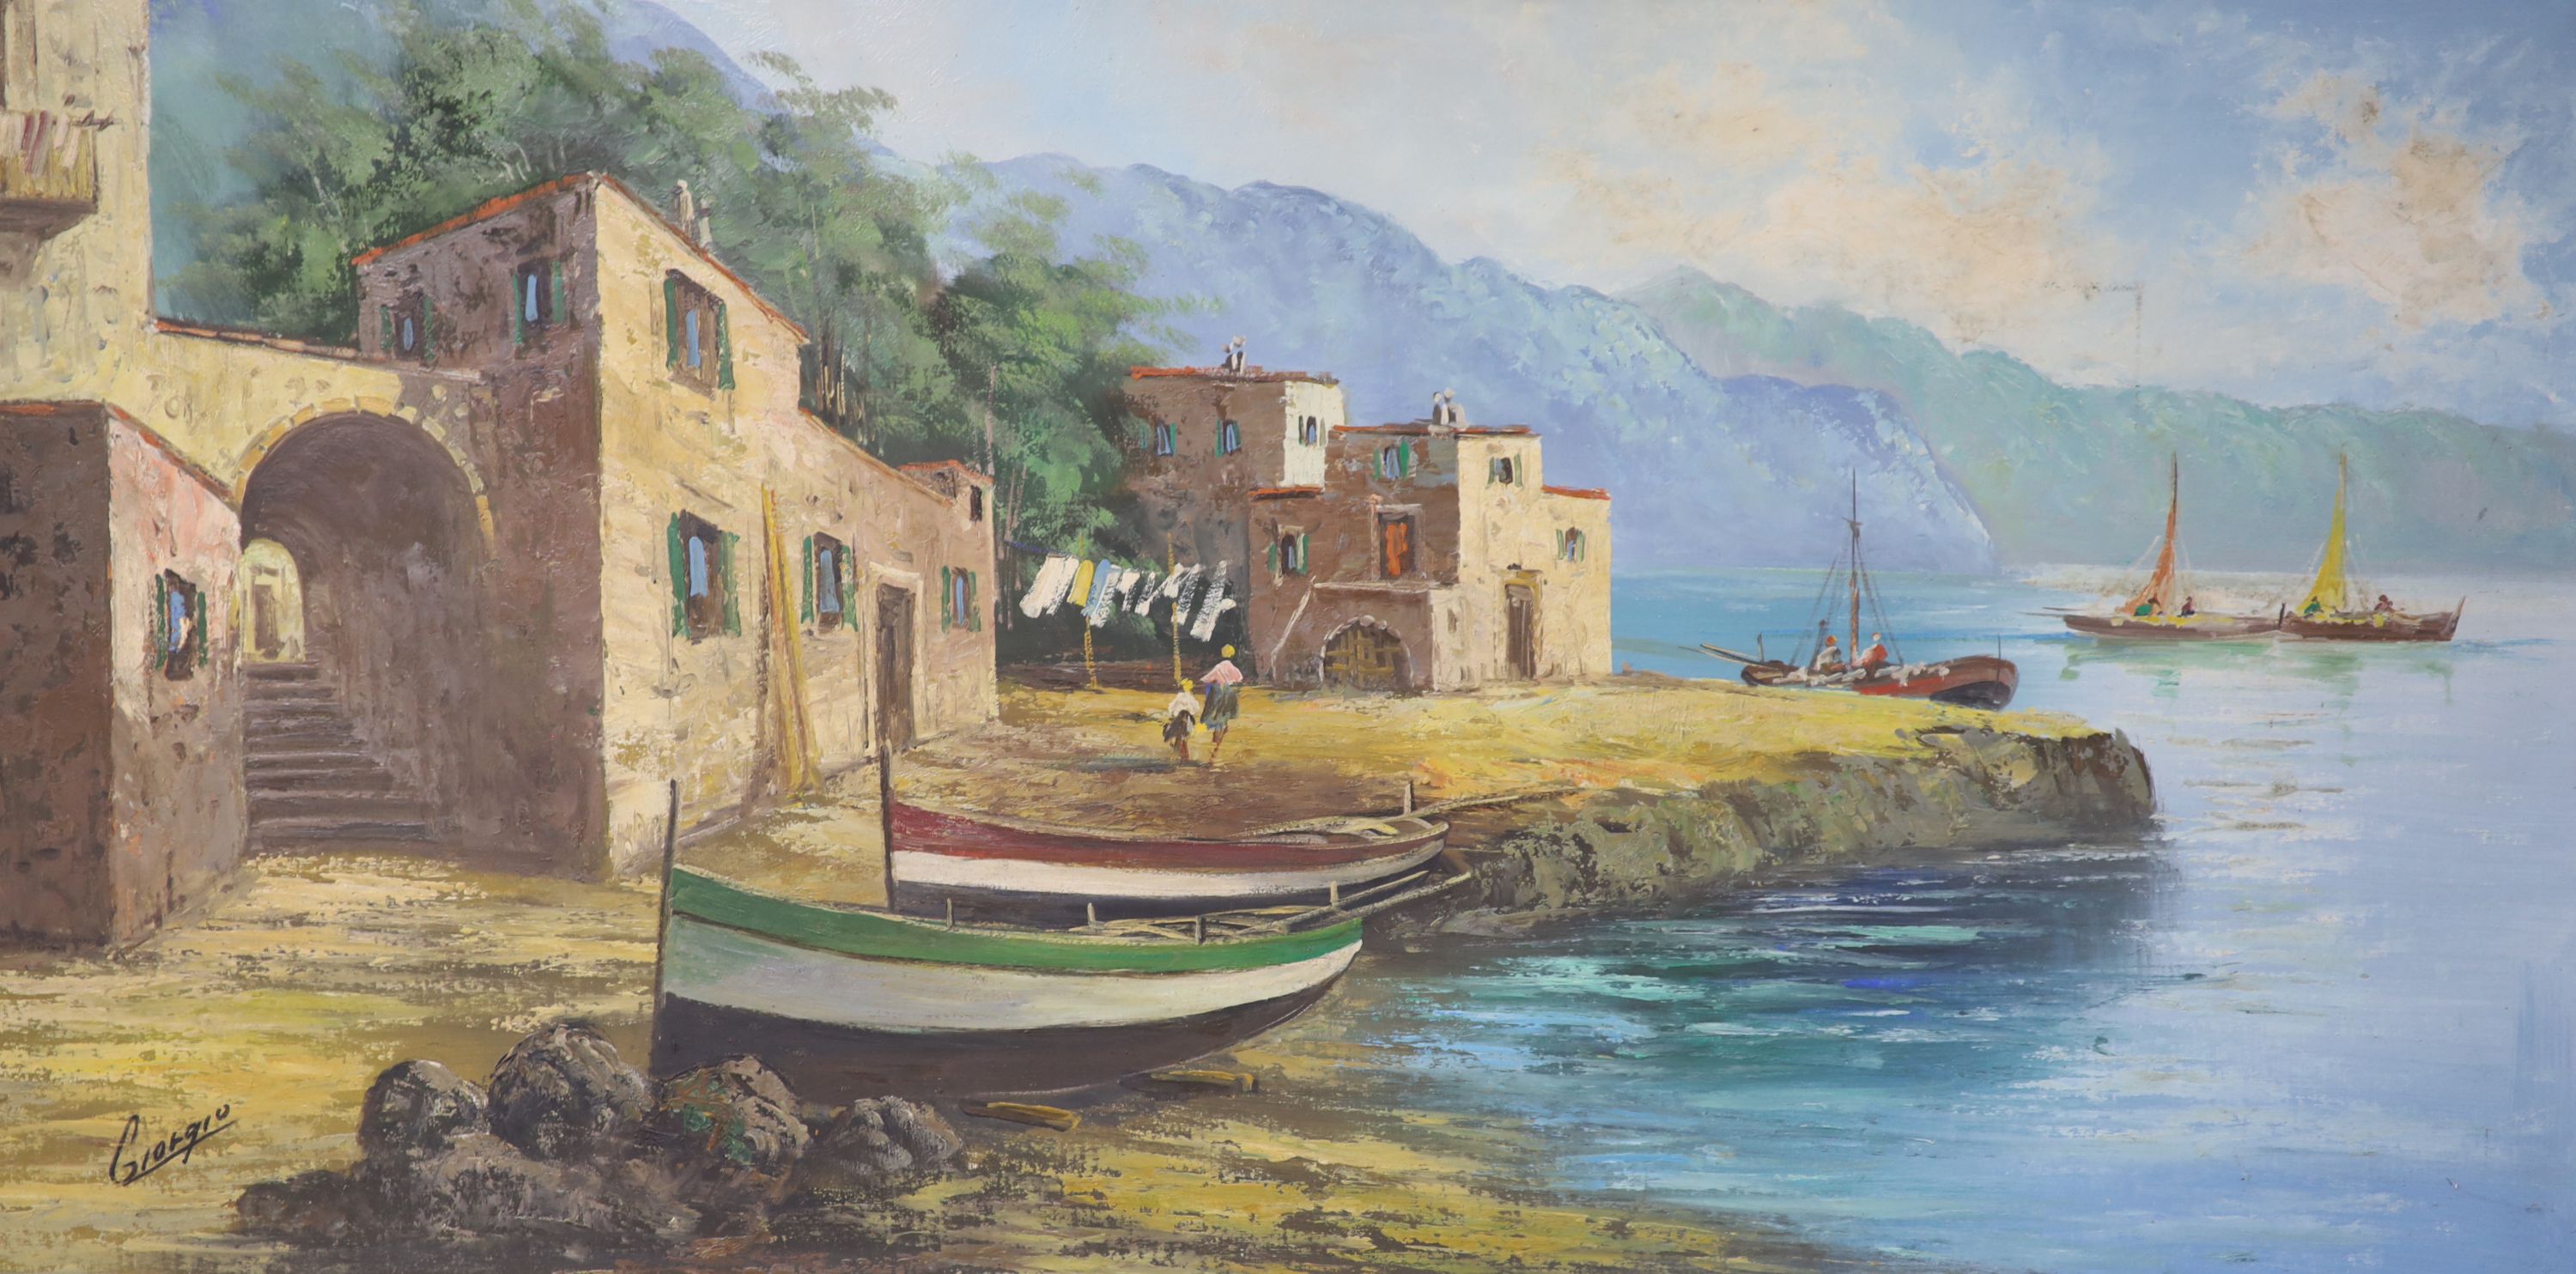 Giorgio, oil on canvas, Italian coastal landscape, signed, 59x 120cm